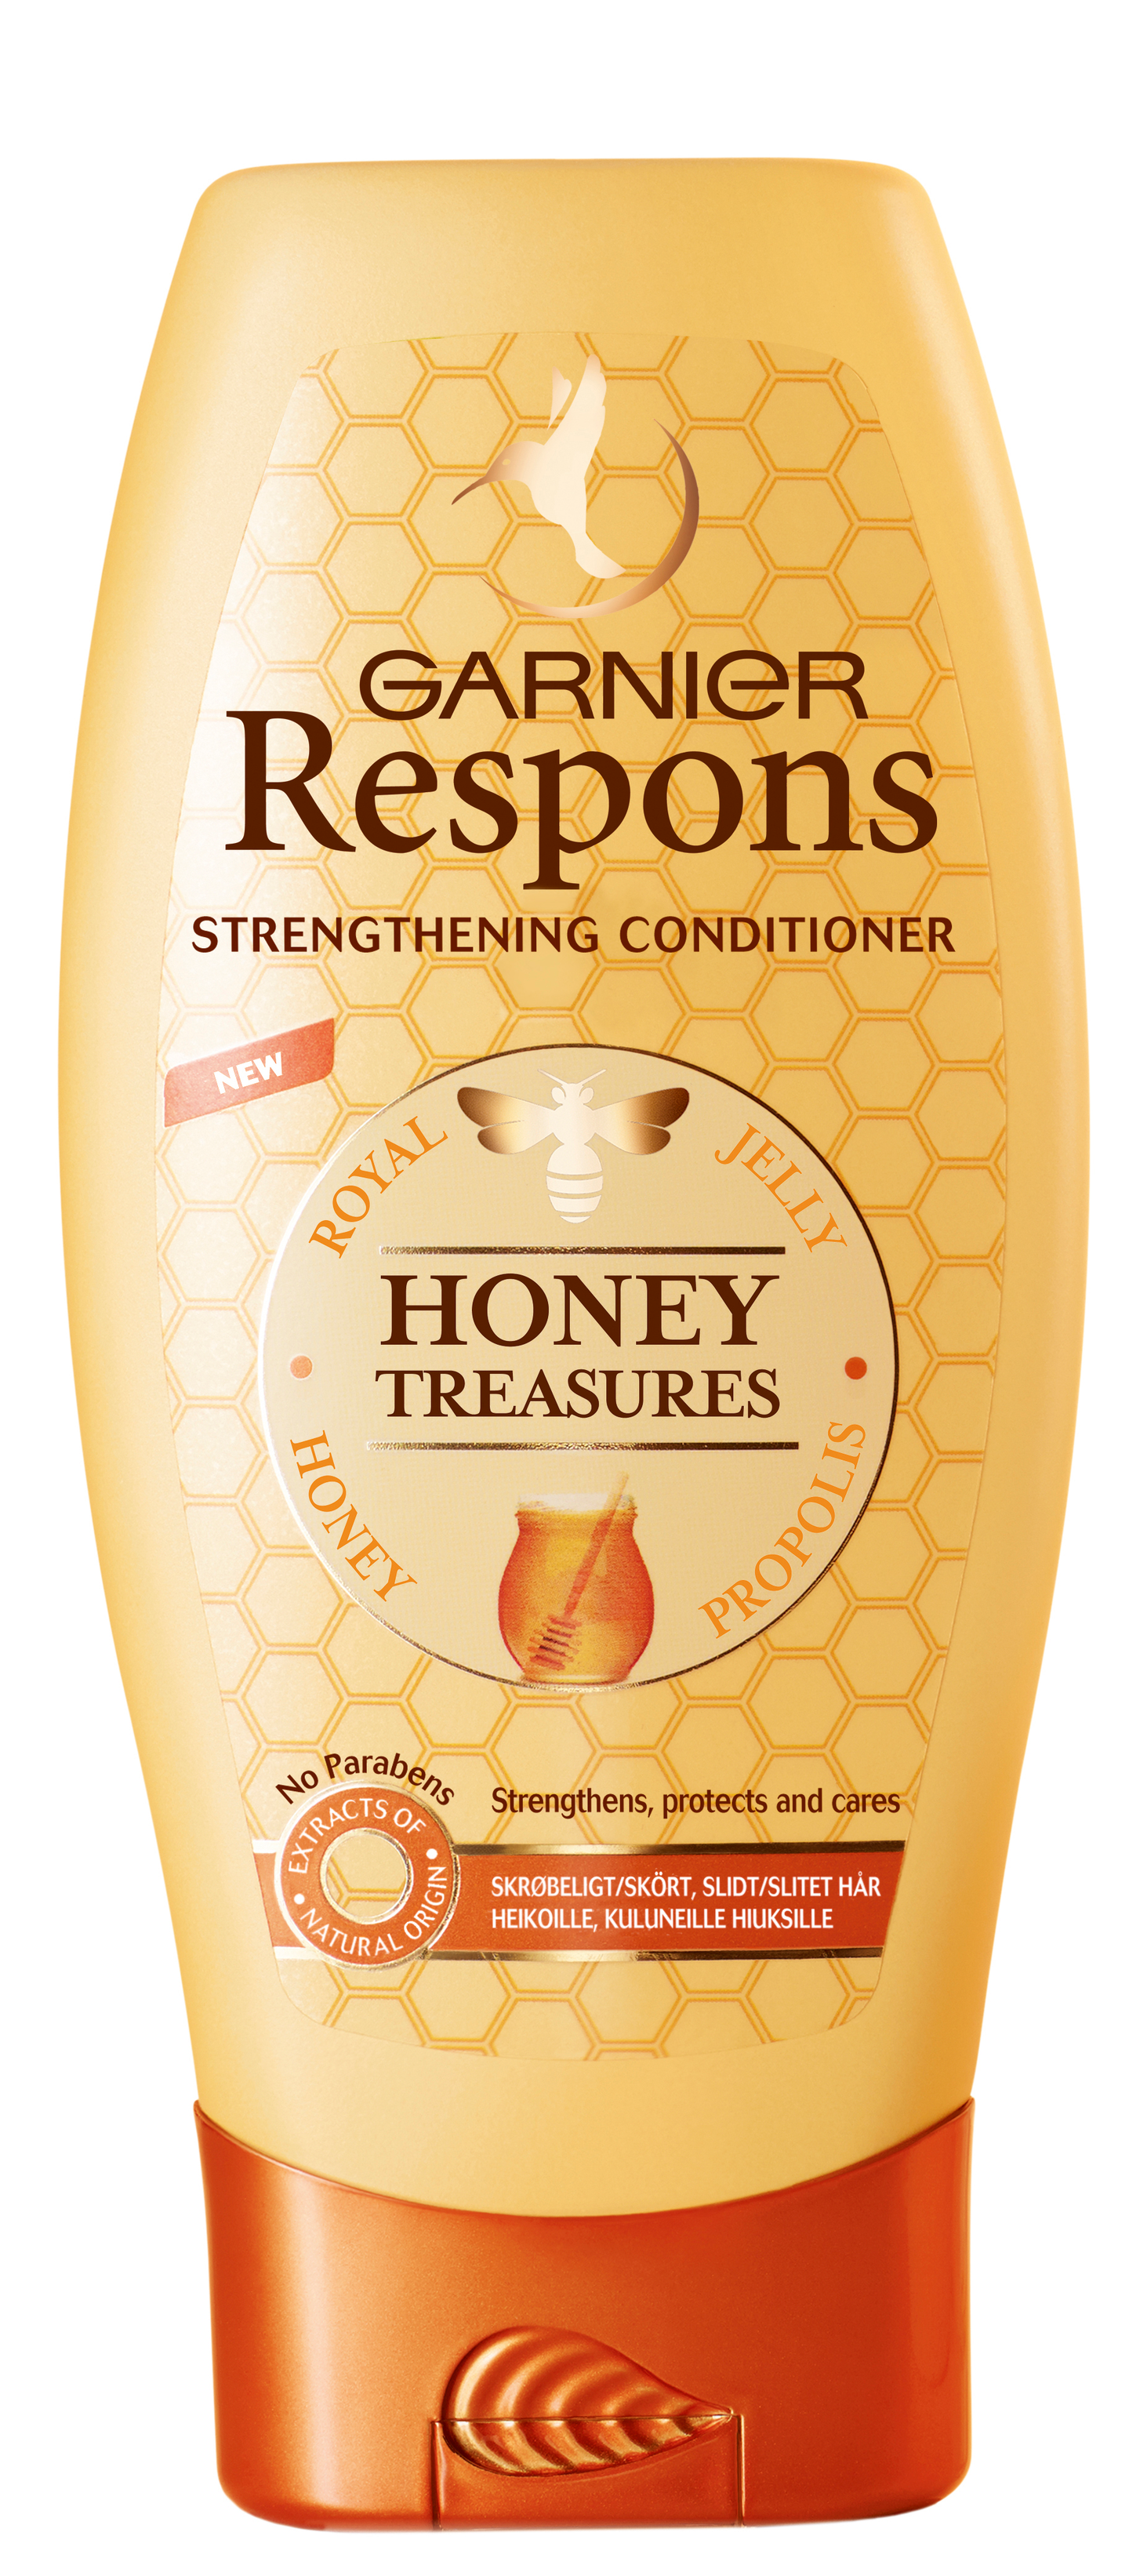 Garnier Respons hoitoaine 200ml Honey Treasures heikoille ja kuluneille hiuksille